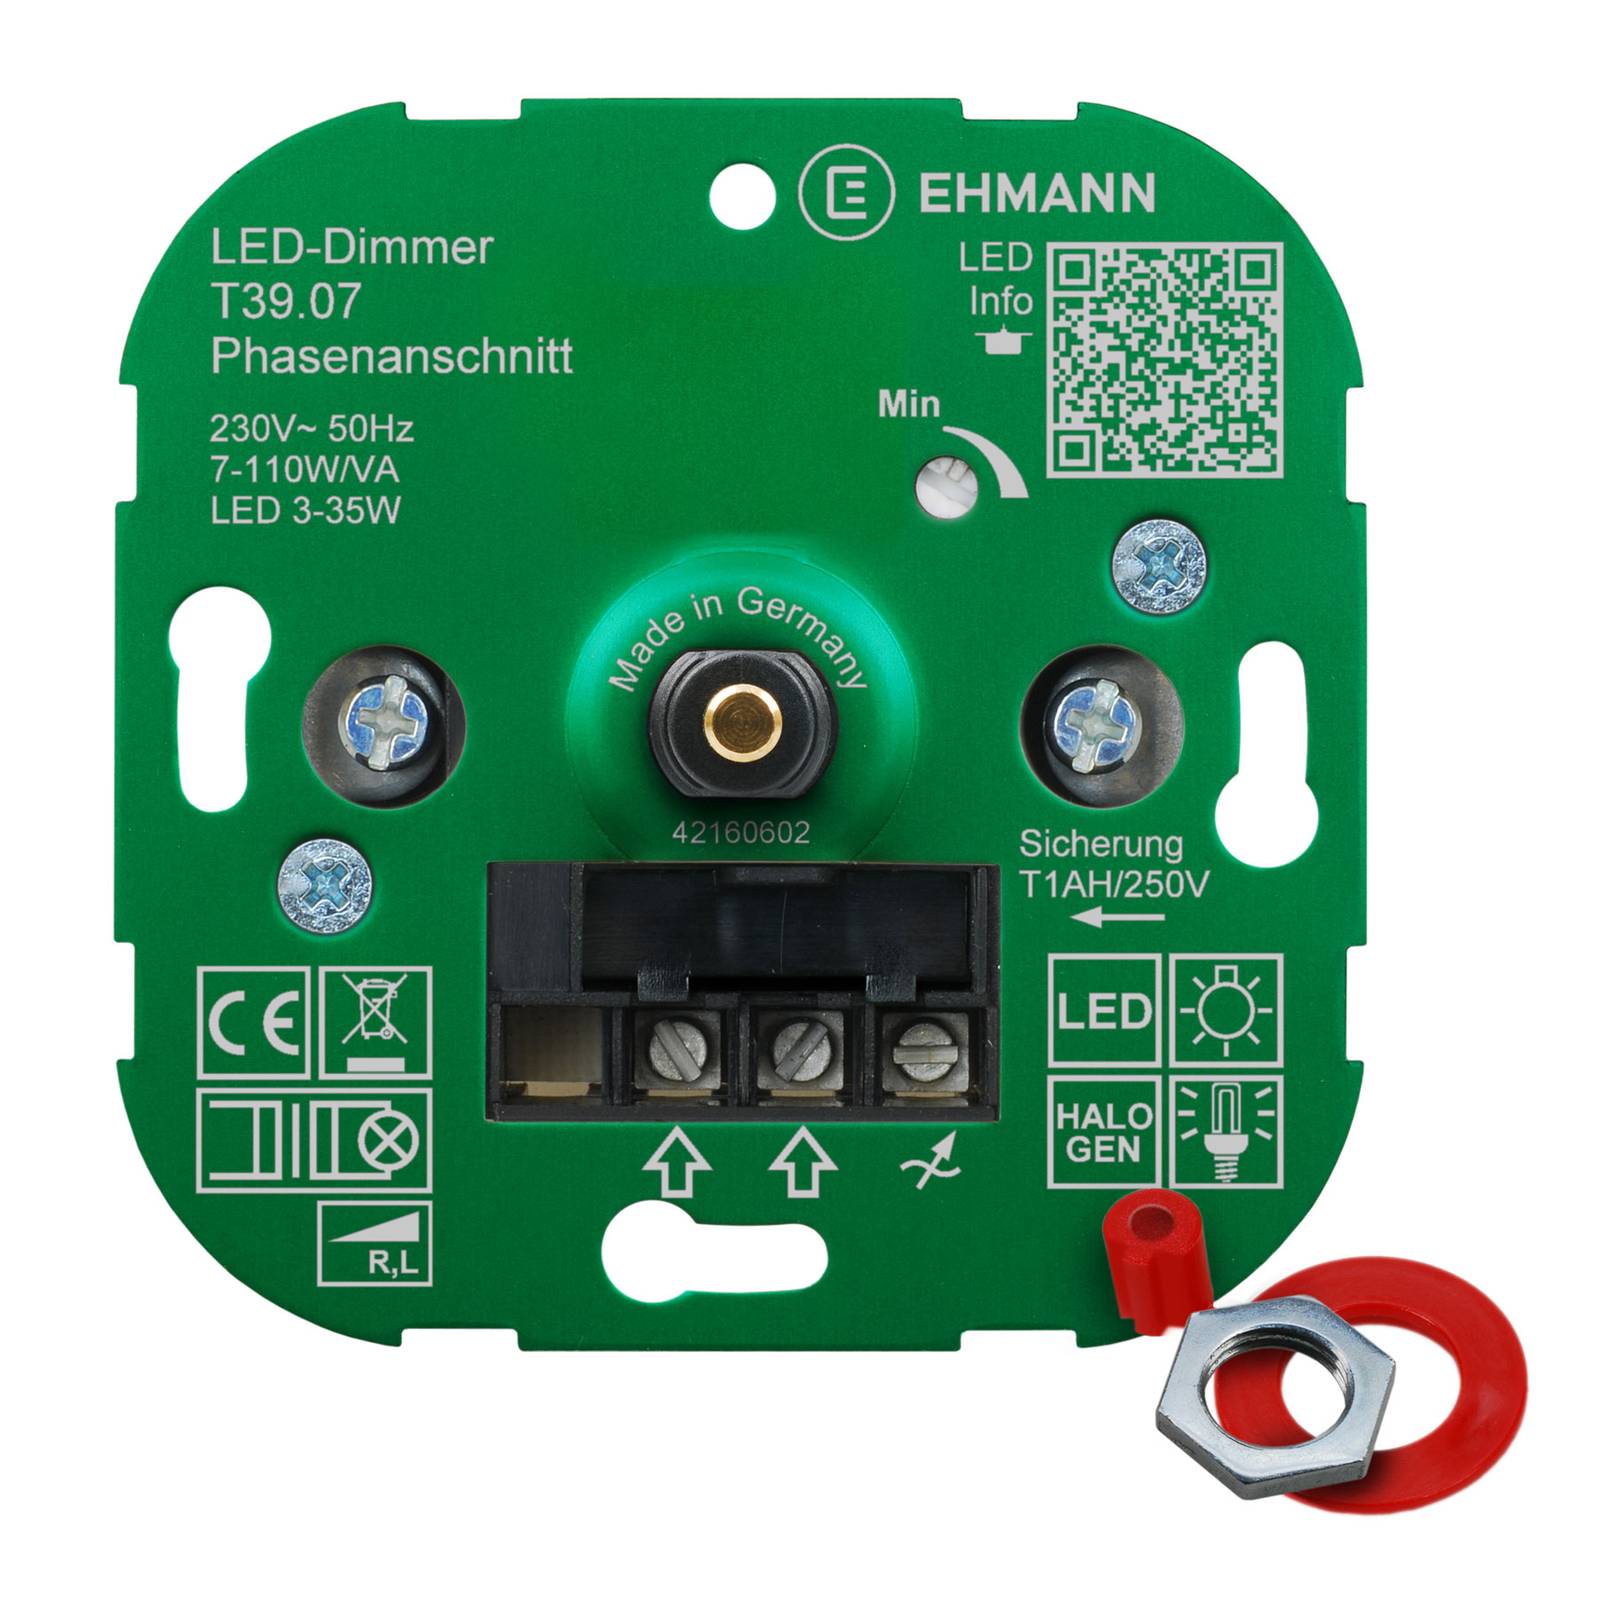 EHMANN T39 LED-Dimmer Phasenanschnitt, 7 - 110 W